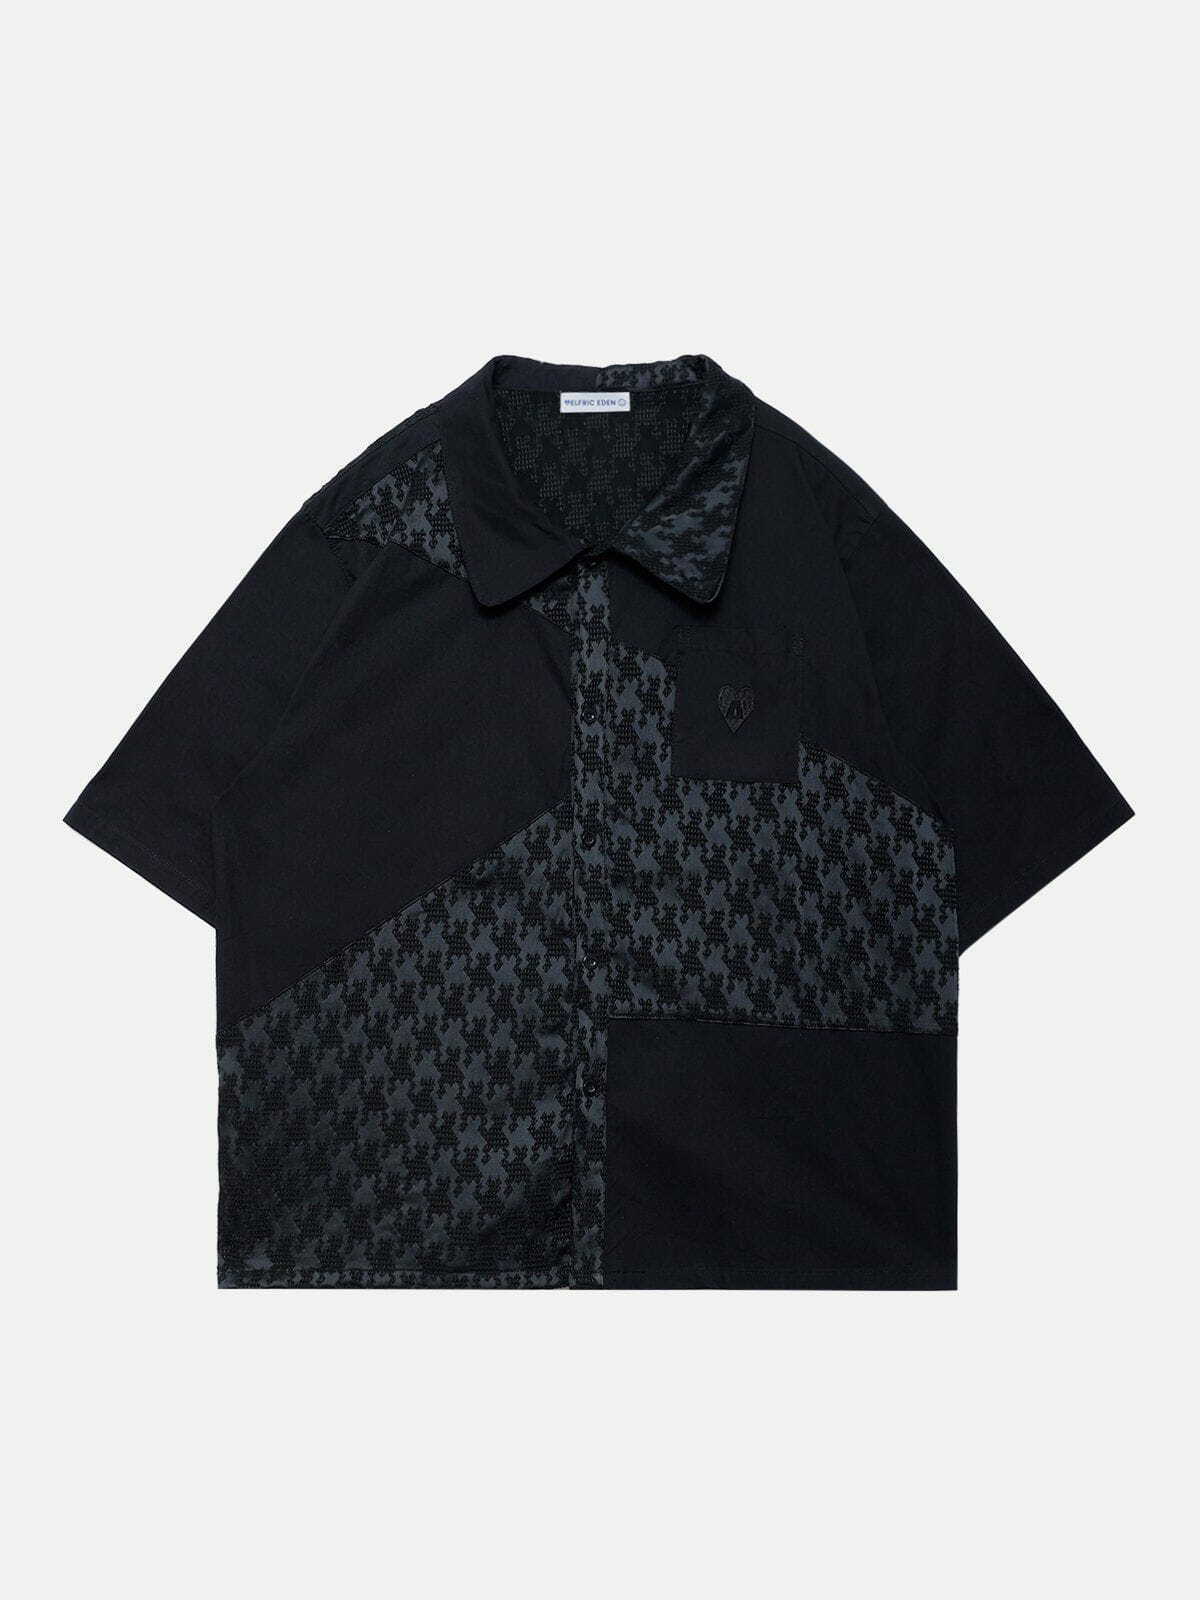 patchwork short sleeve shirt   edgy & vibrant streetwear 7345